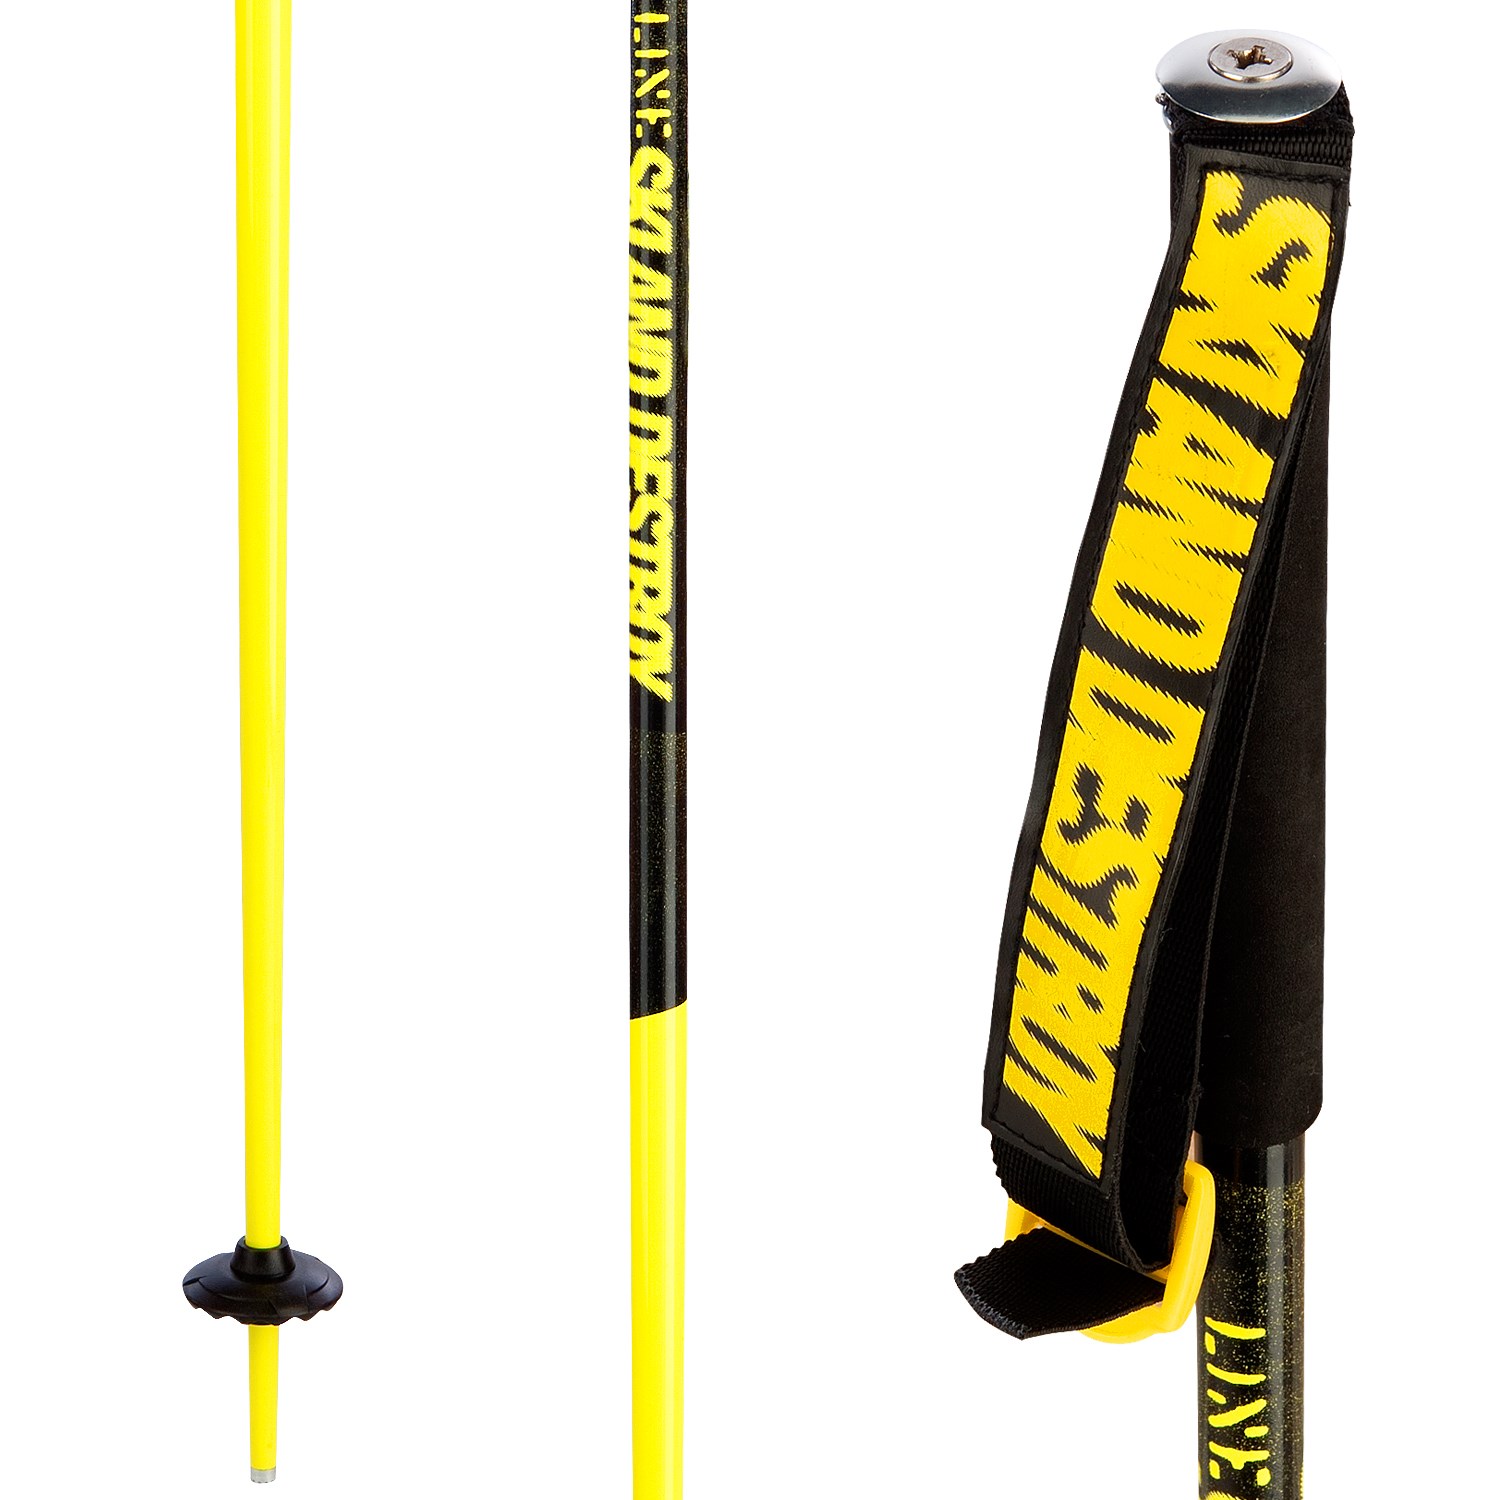 Line Tac Ski Poles